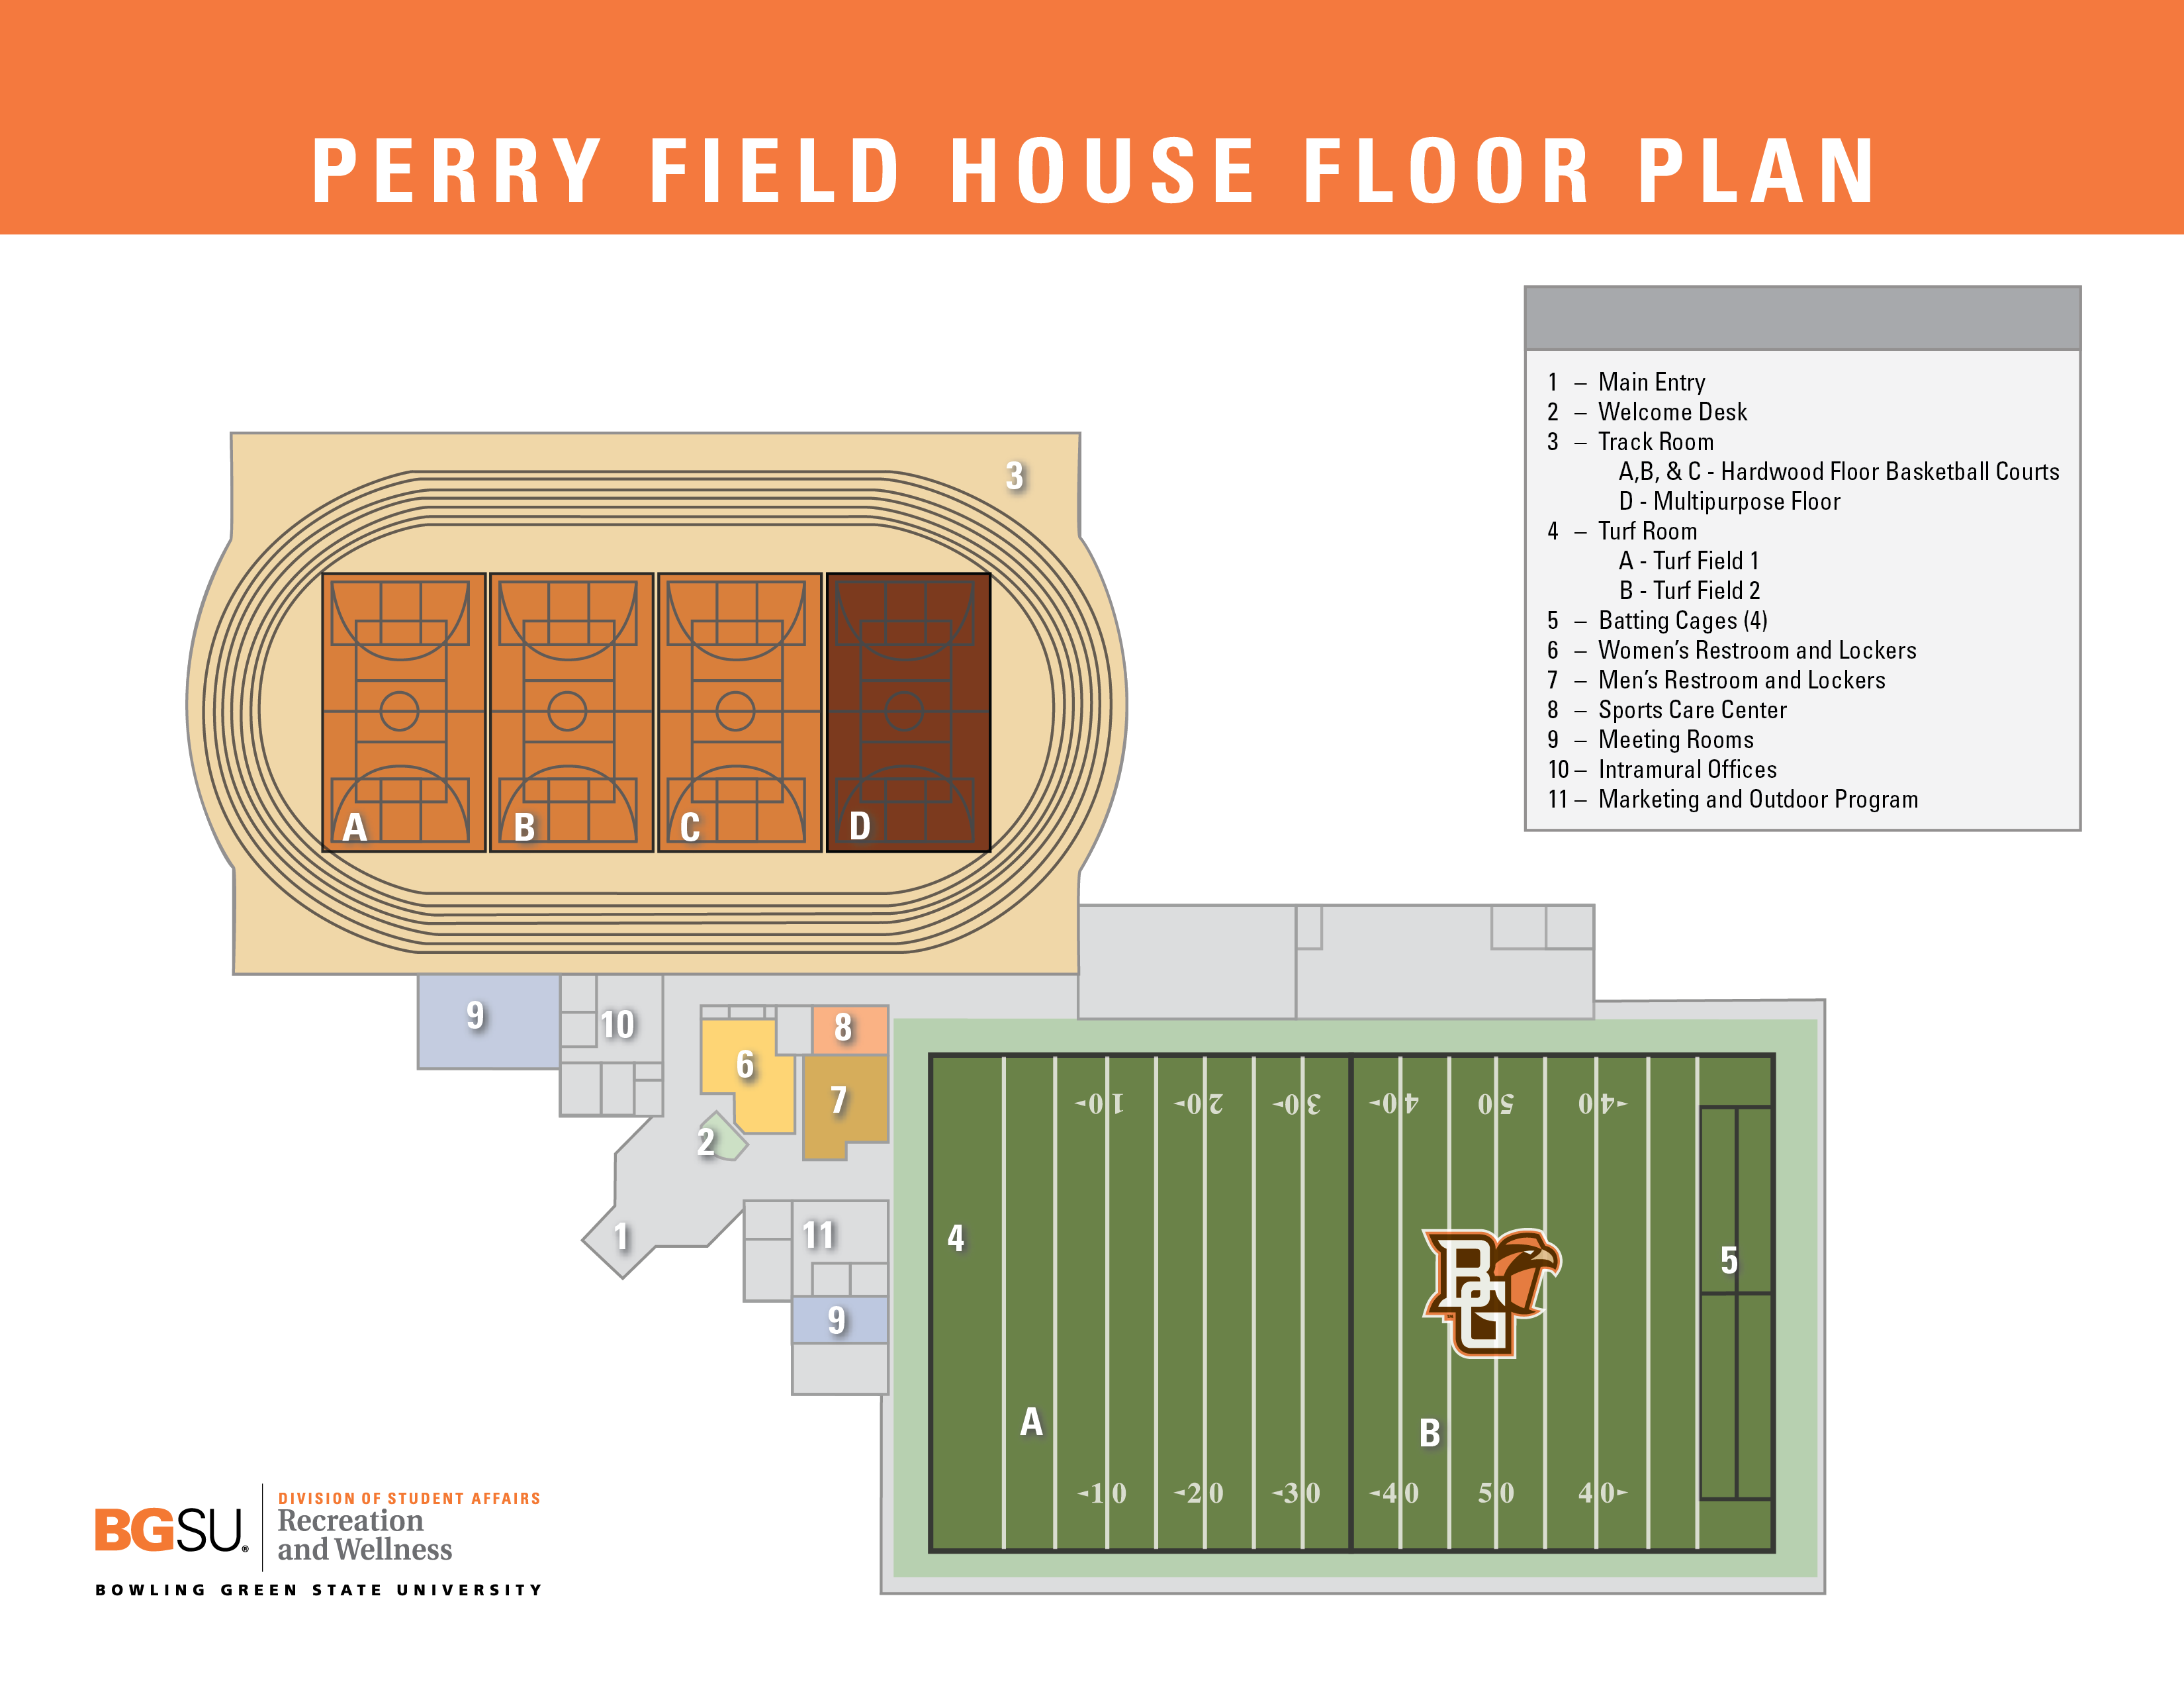 PFH Floor Plan